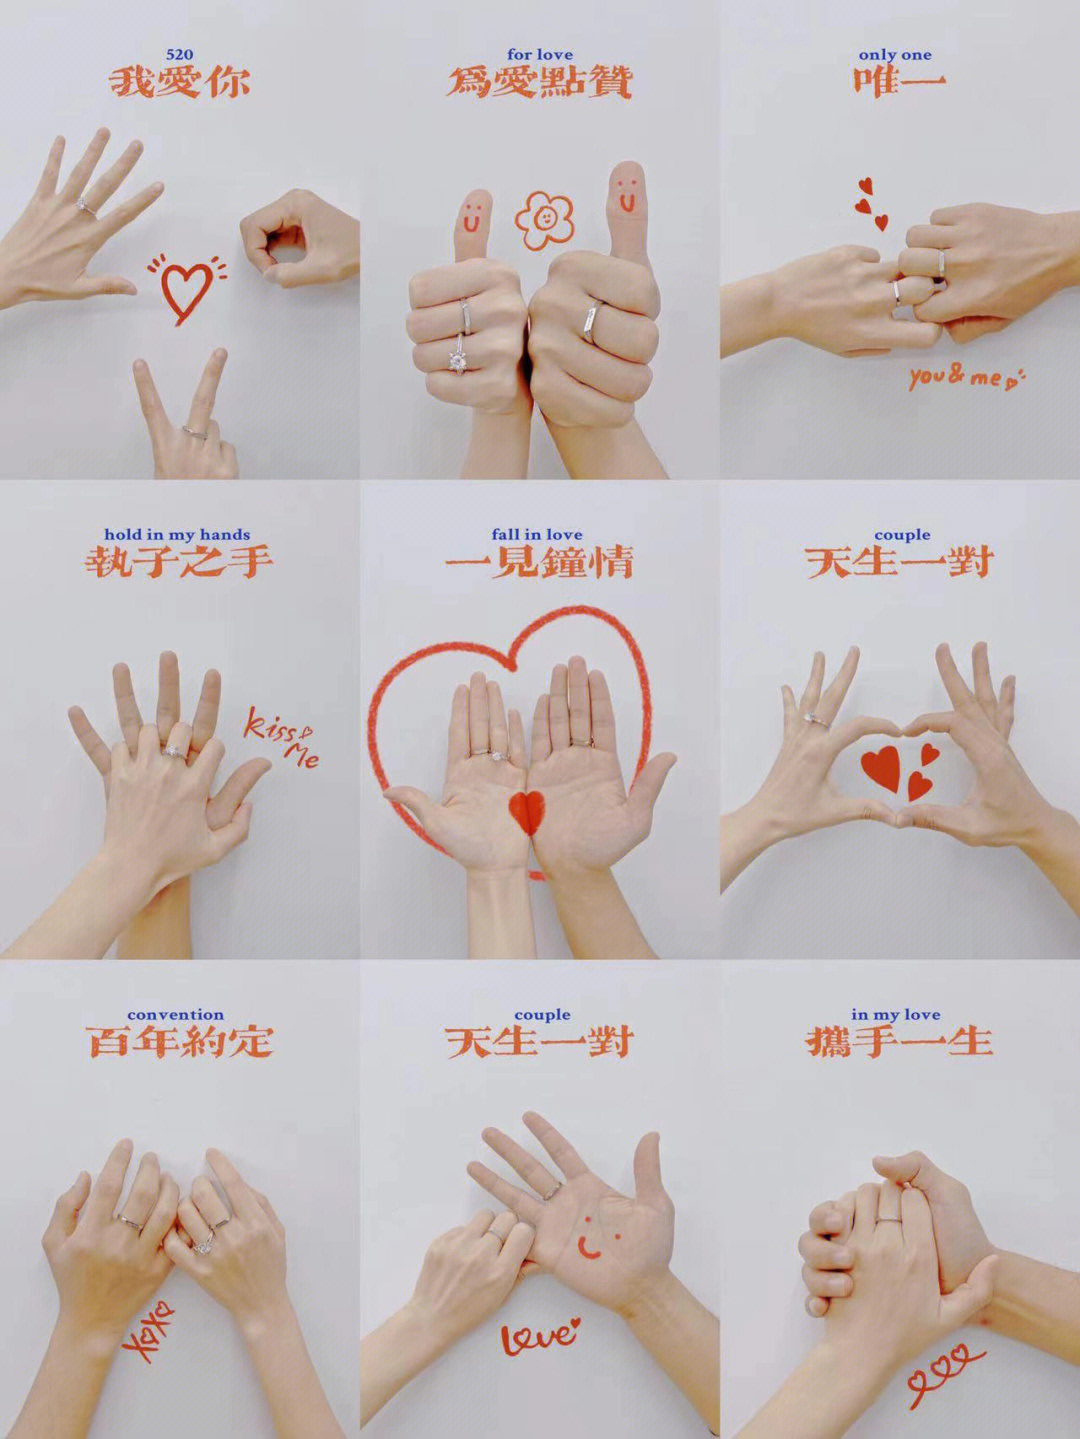 手势代表的意思图图片